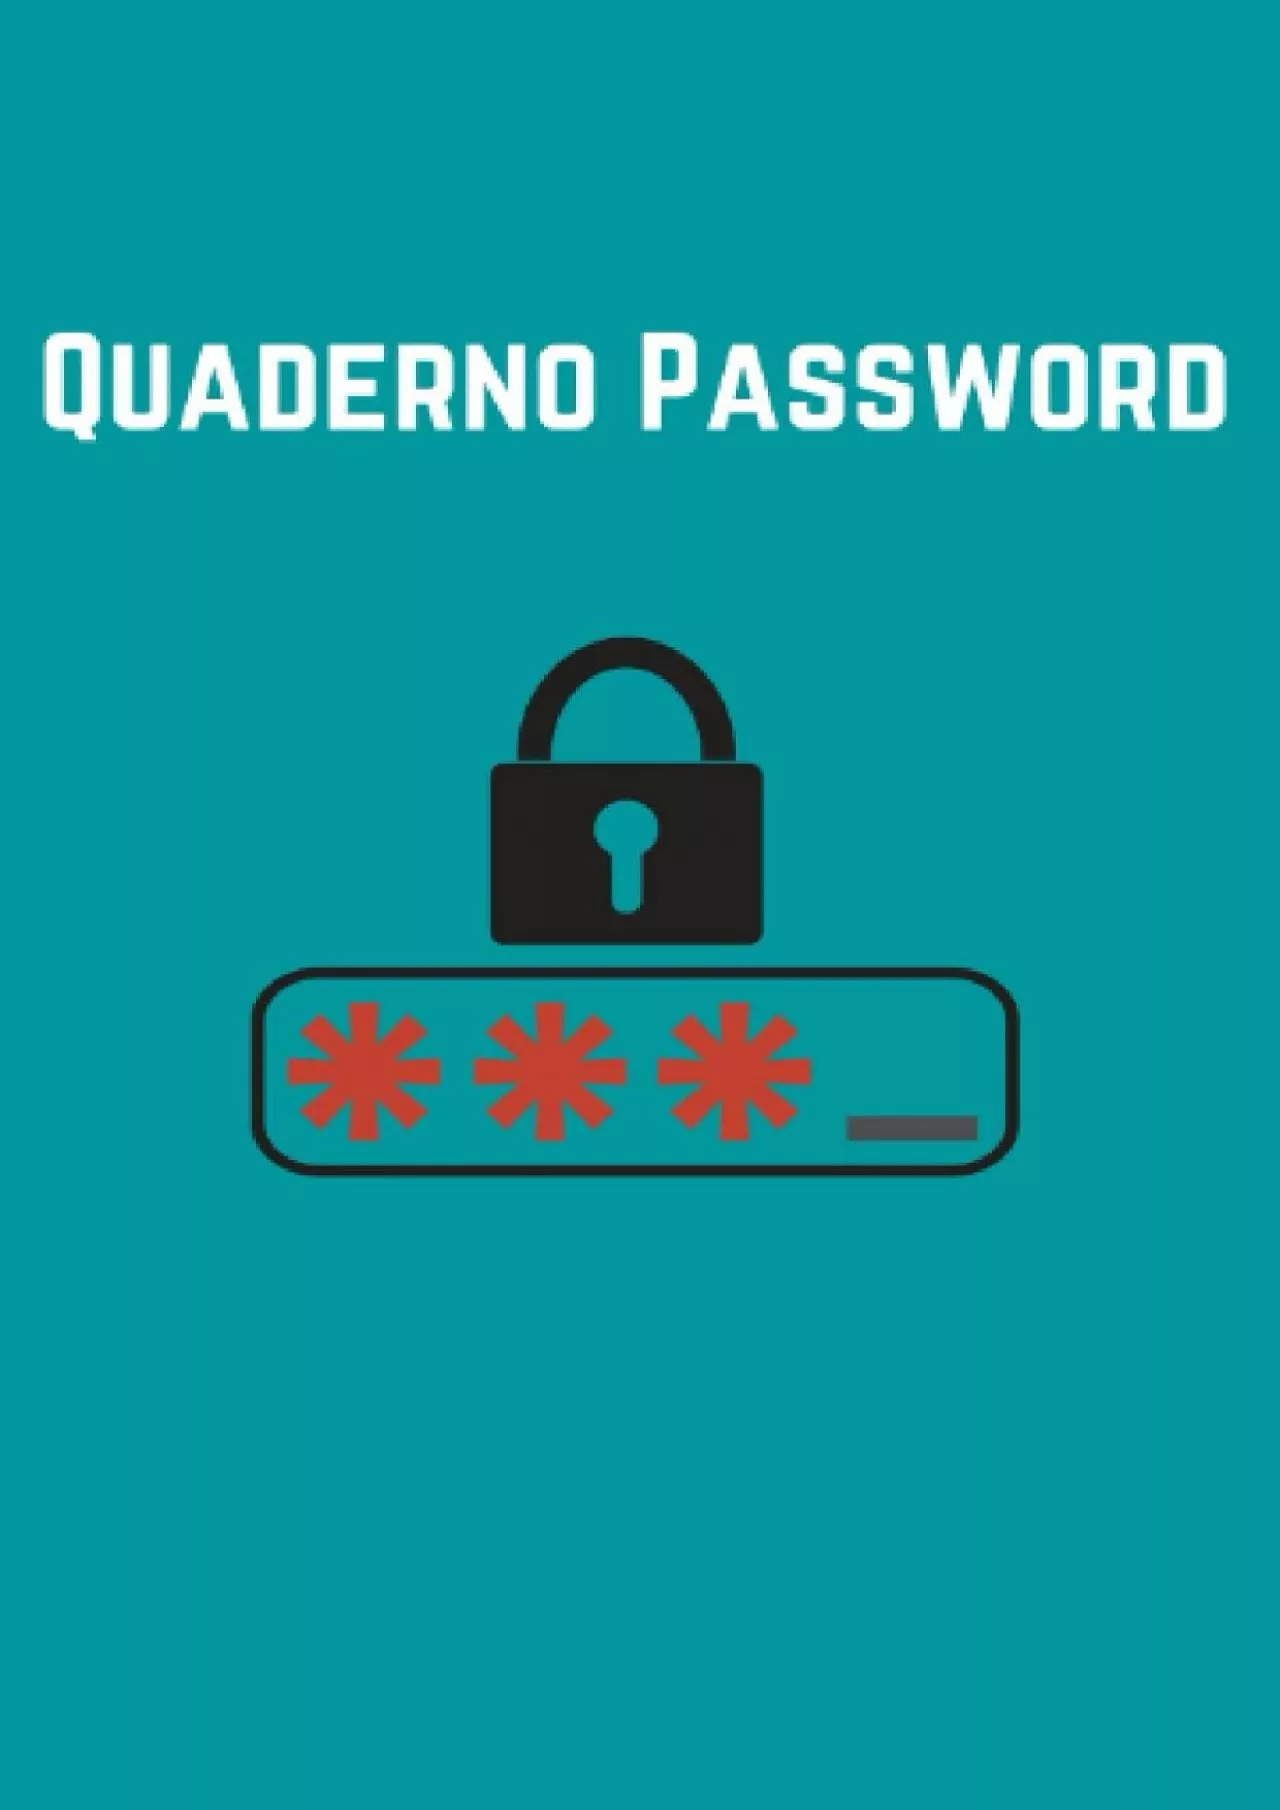 [DOWLOAD]-Quaderno Password: Ecco il Quaderno per scrivere le tue Password che stavi cercando